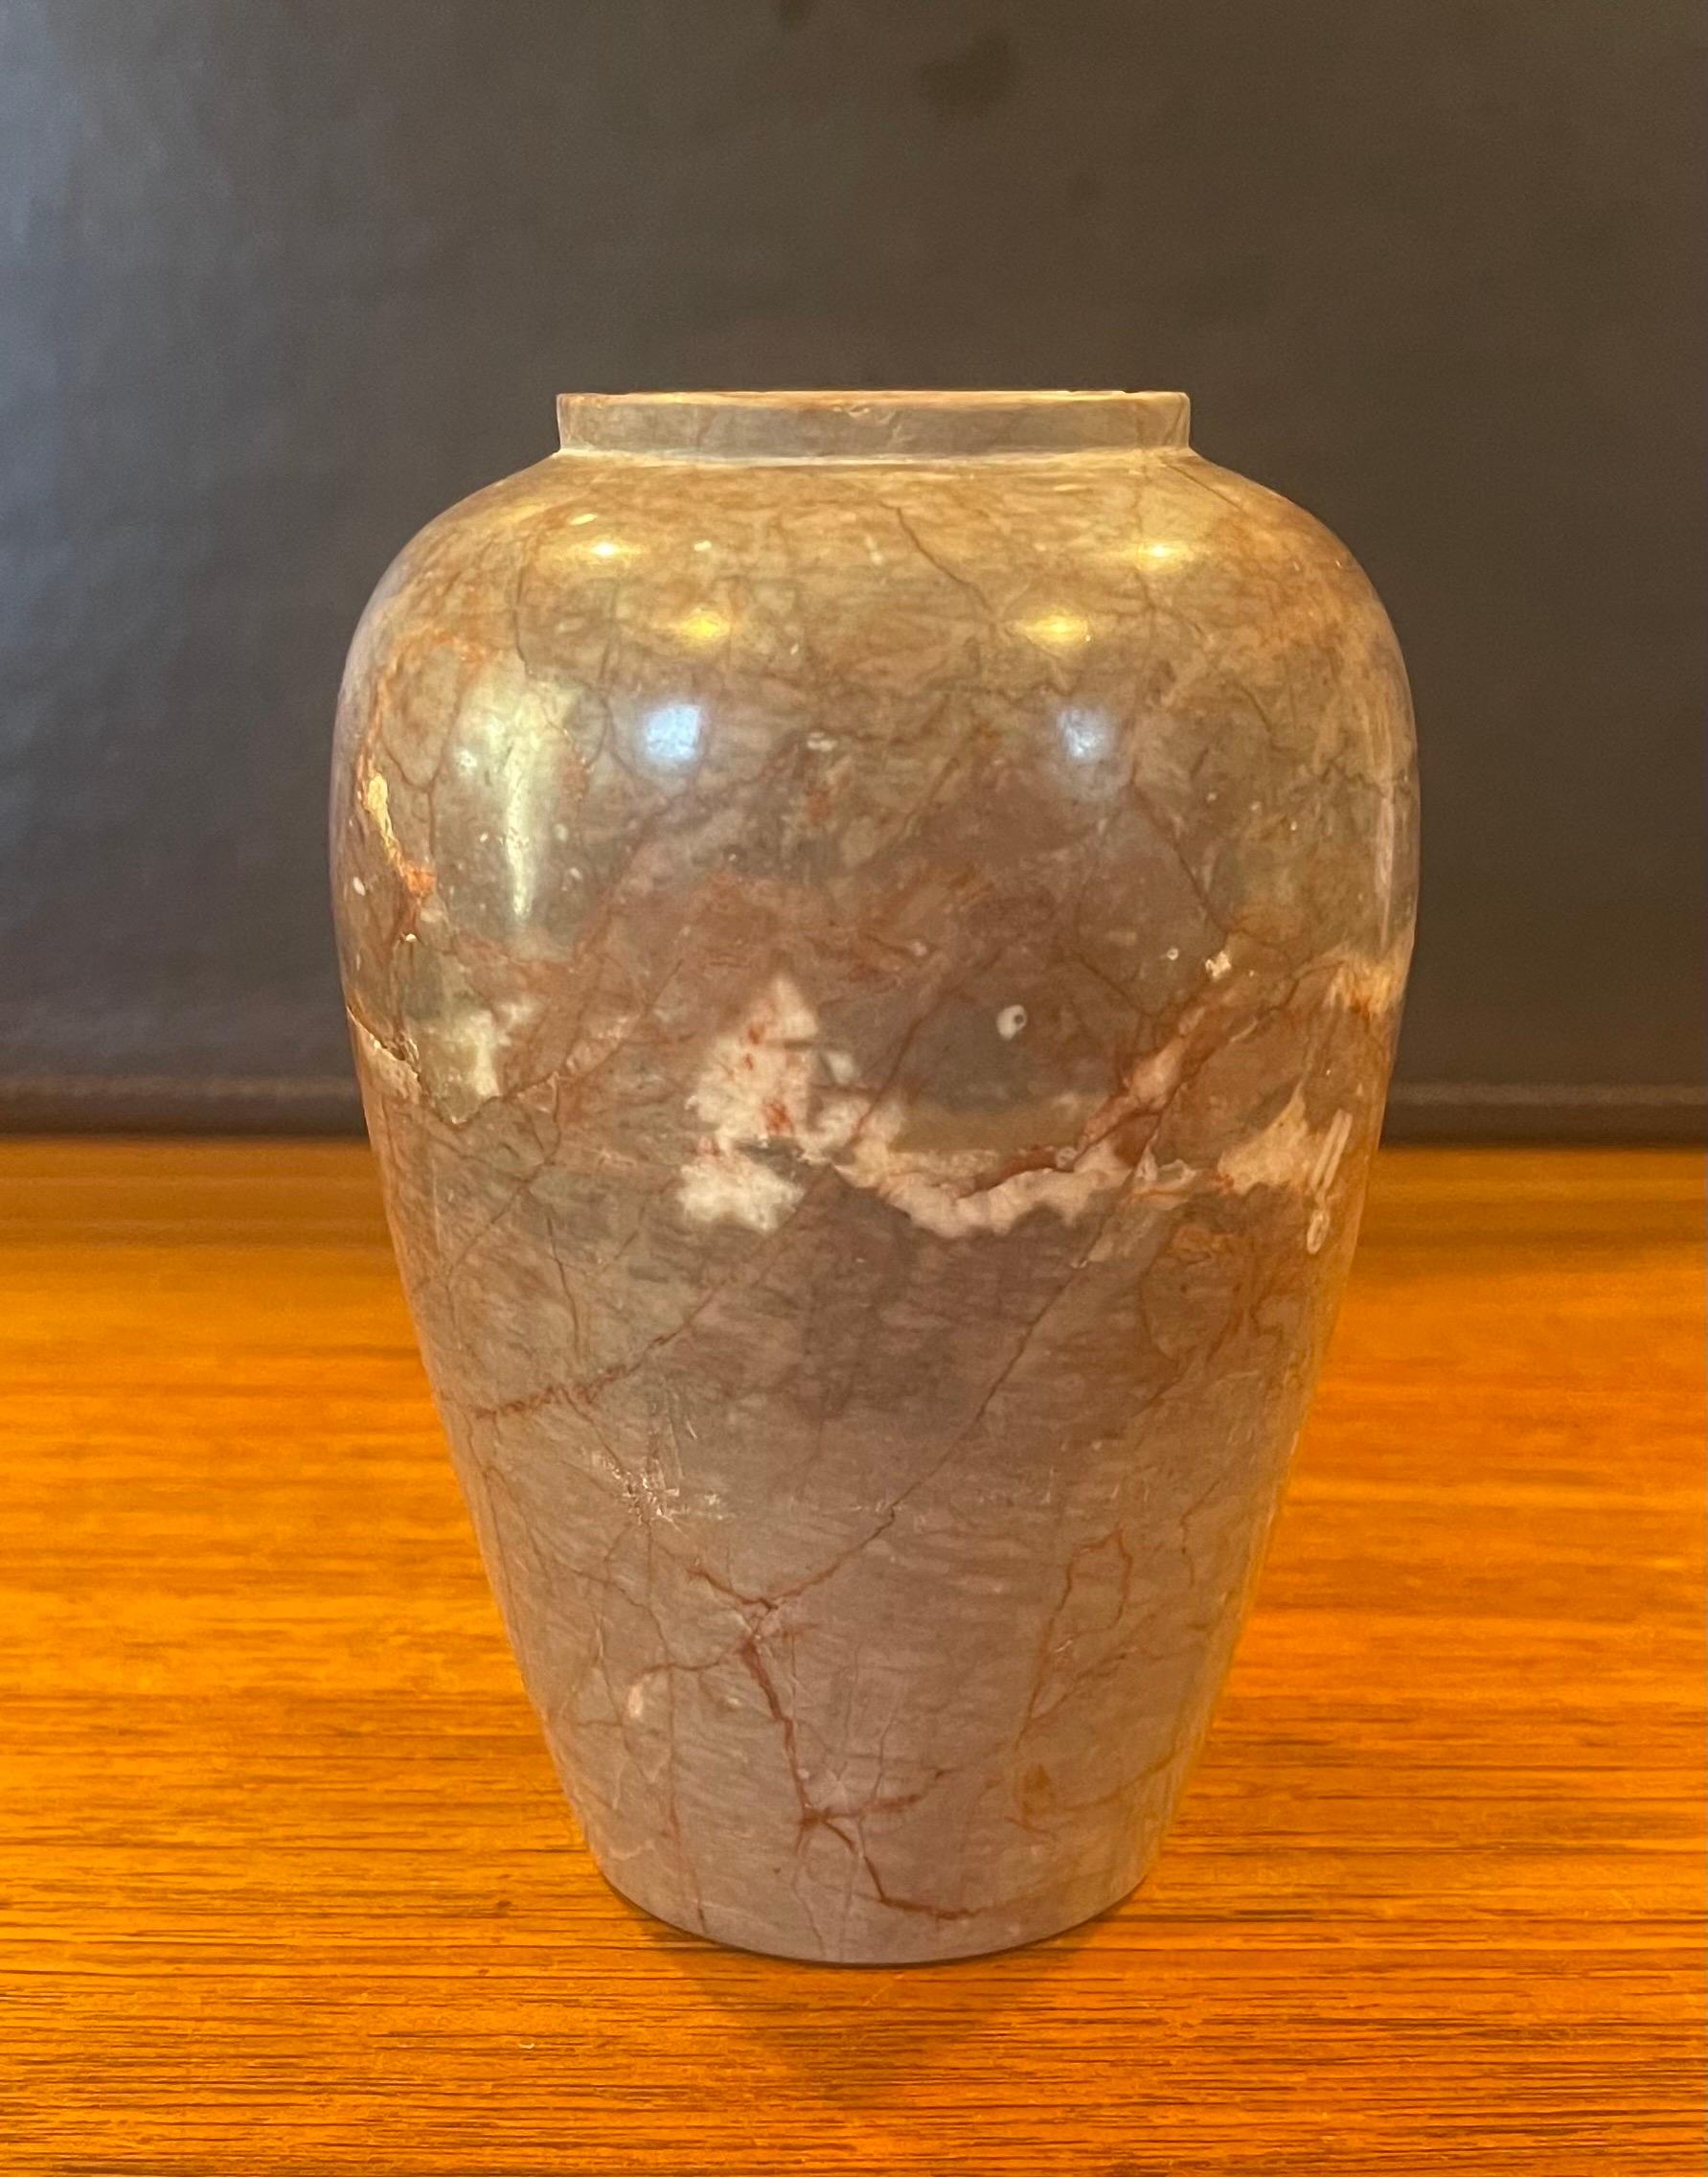 Petit vase en marbre italien post-moderne, vers les années 1970. Le vase est principalement de couleur beige foncé, mais il est veiné de crème, de noir et de rouge. Le vase est en très bon état avec un petit éclat sur l'anneau supérieur et mesure